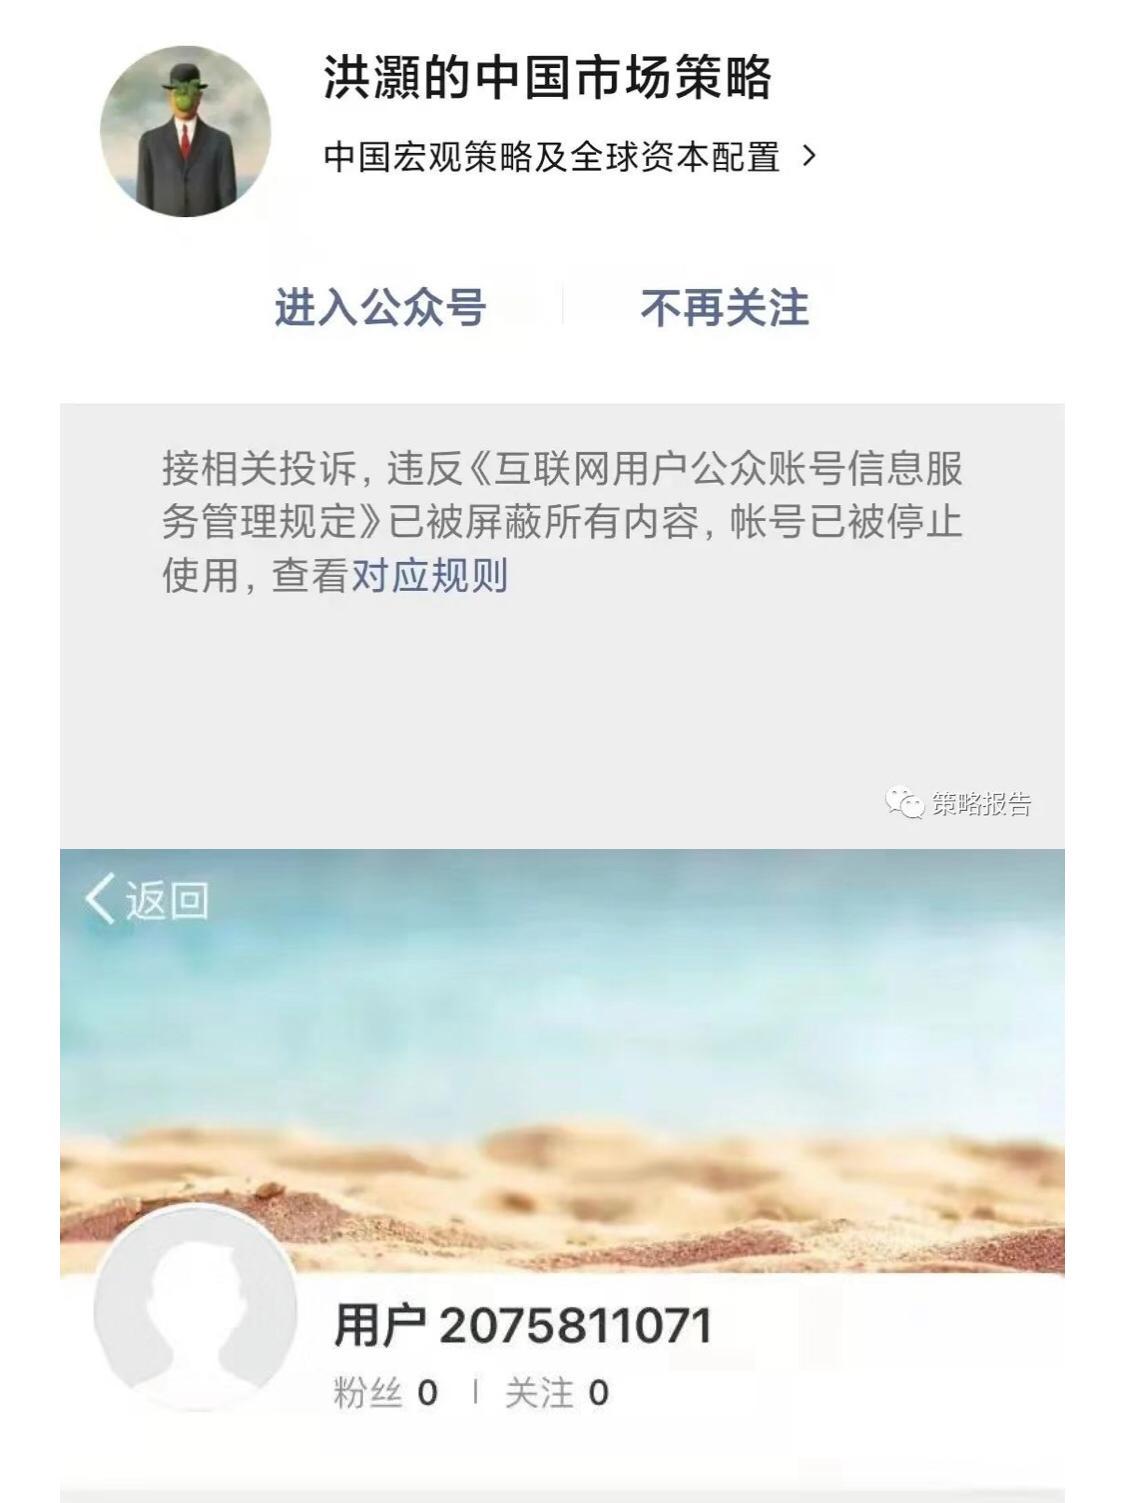 洪灝的微信公眾賬戶「洪灝的中國市場策略」目前已經不能被找到，據網民指由周六（4月30日）晚開始被停止使用，公眾號提示稱，賬戶違反《互聯網用戶公眾賬號信息服務管理規定》。